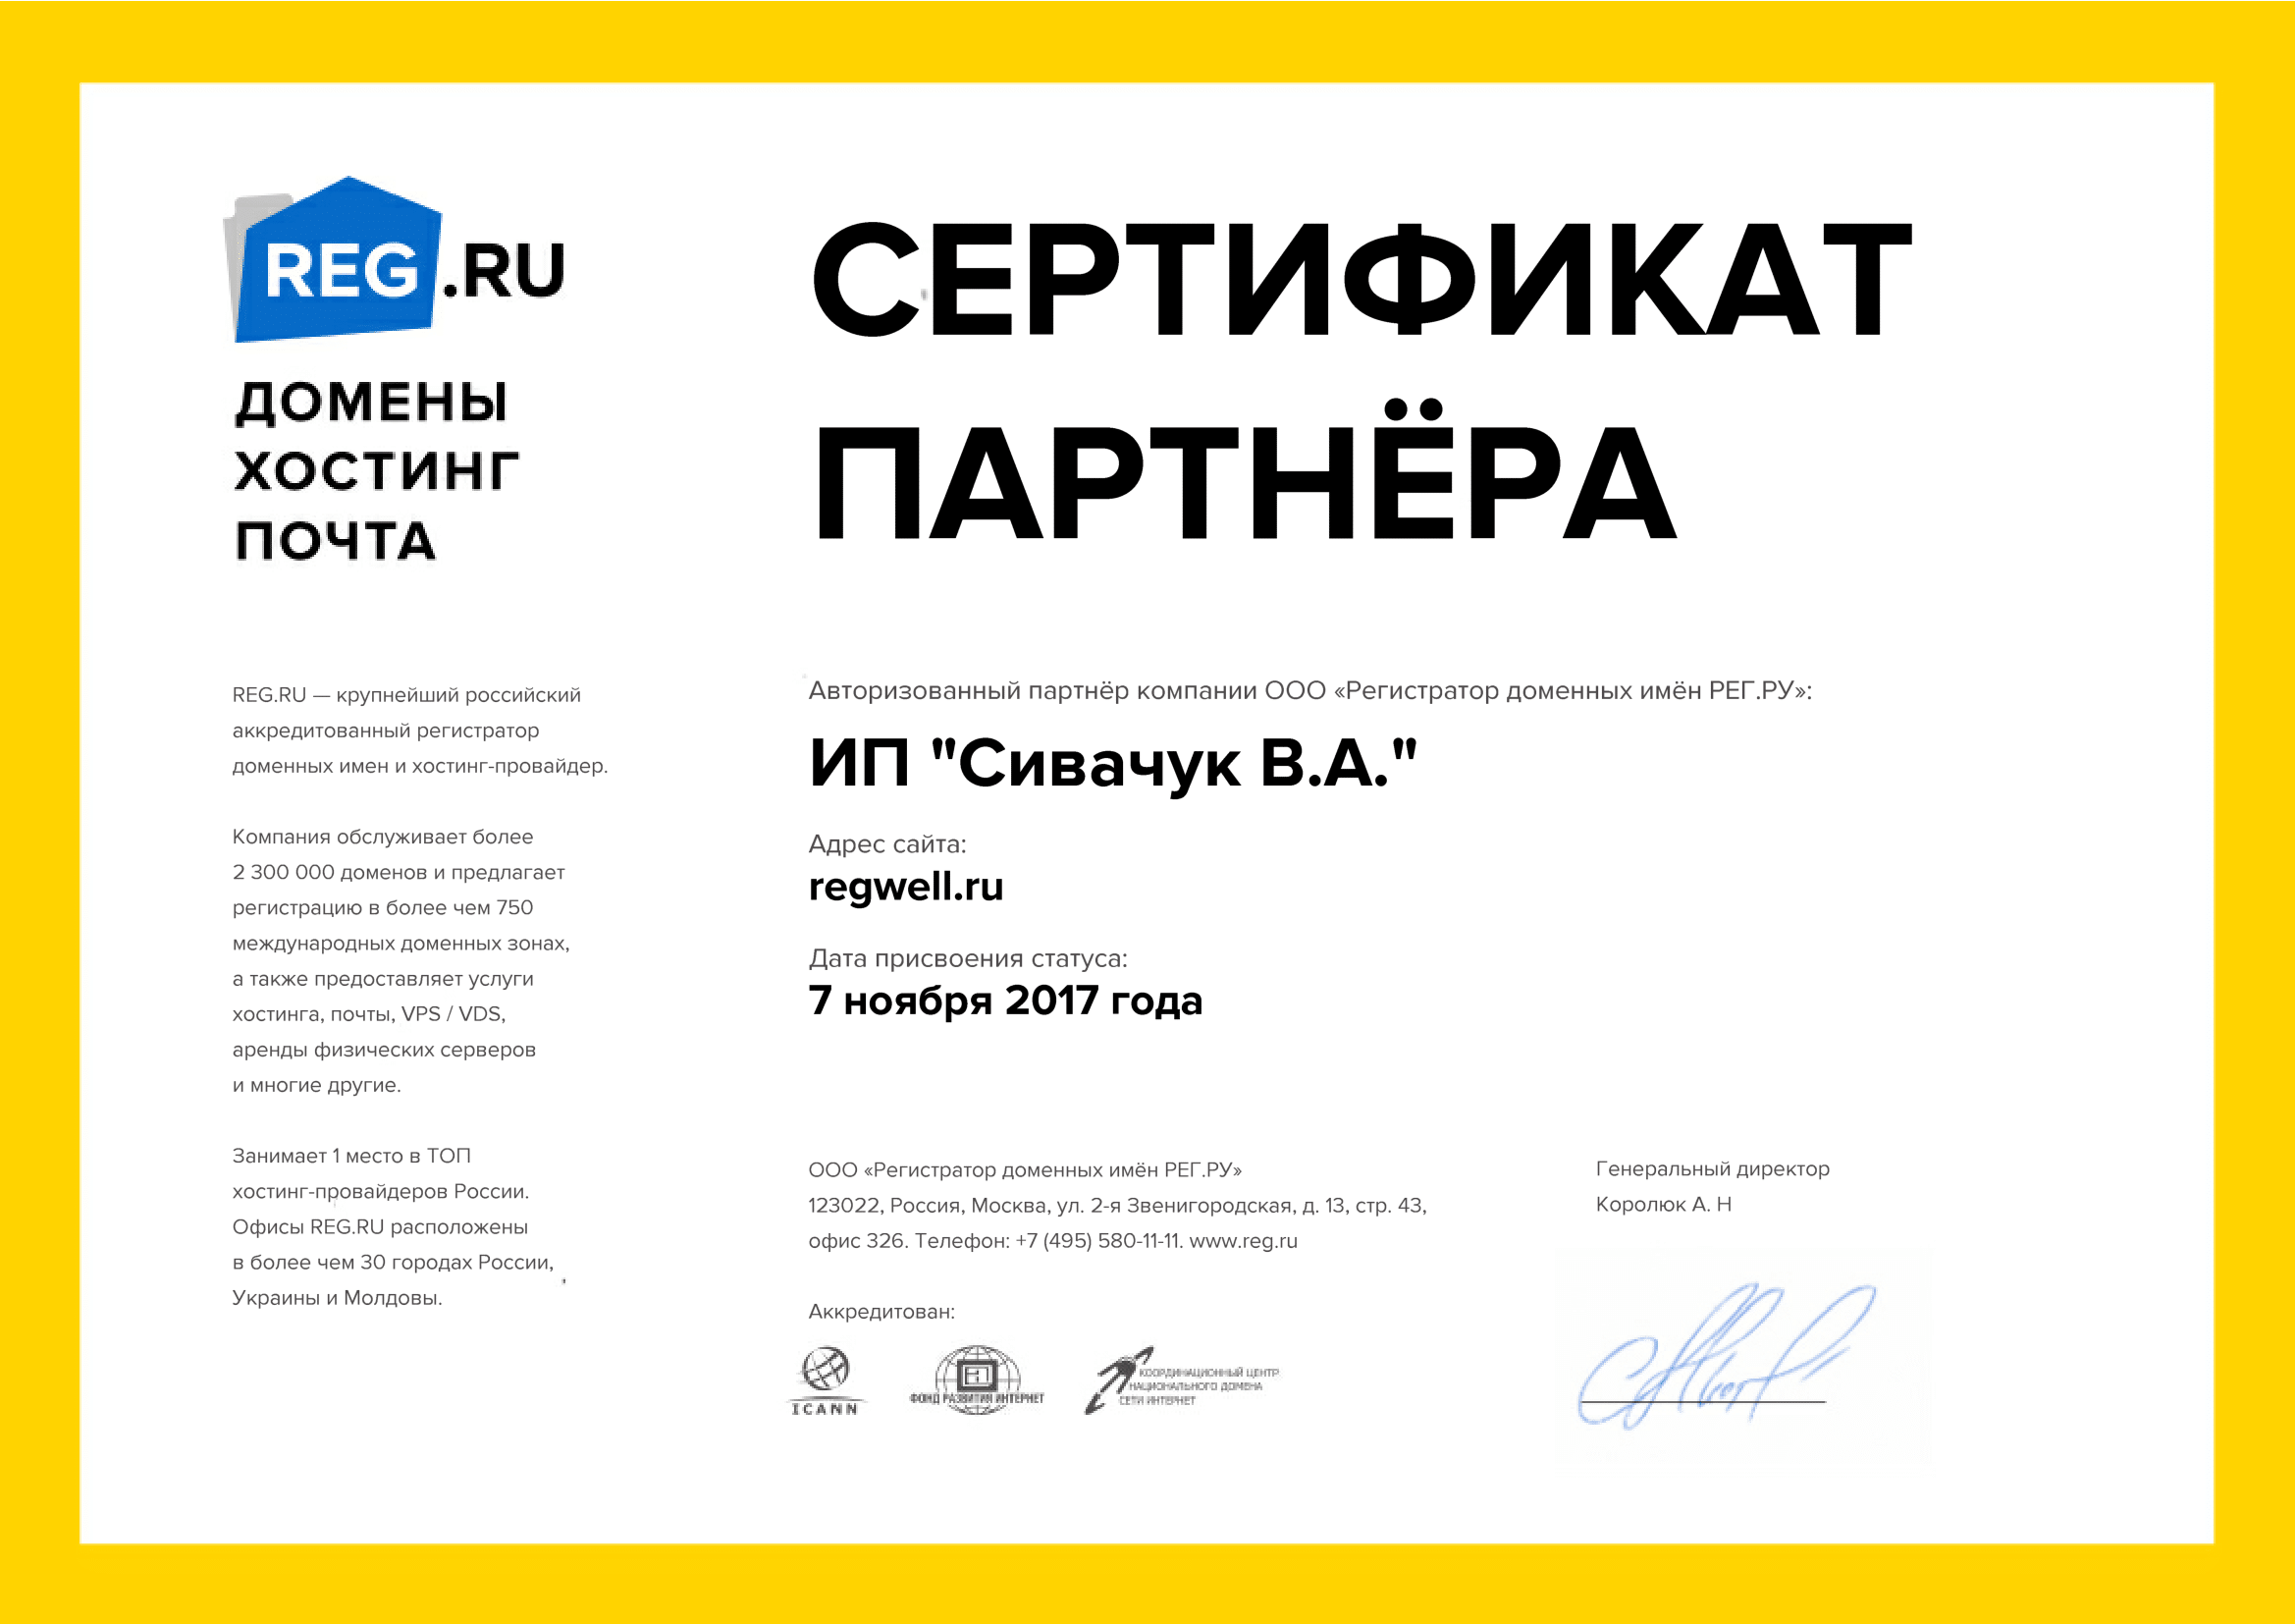 Сертификат партнера REG.RU